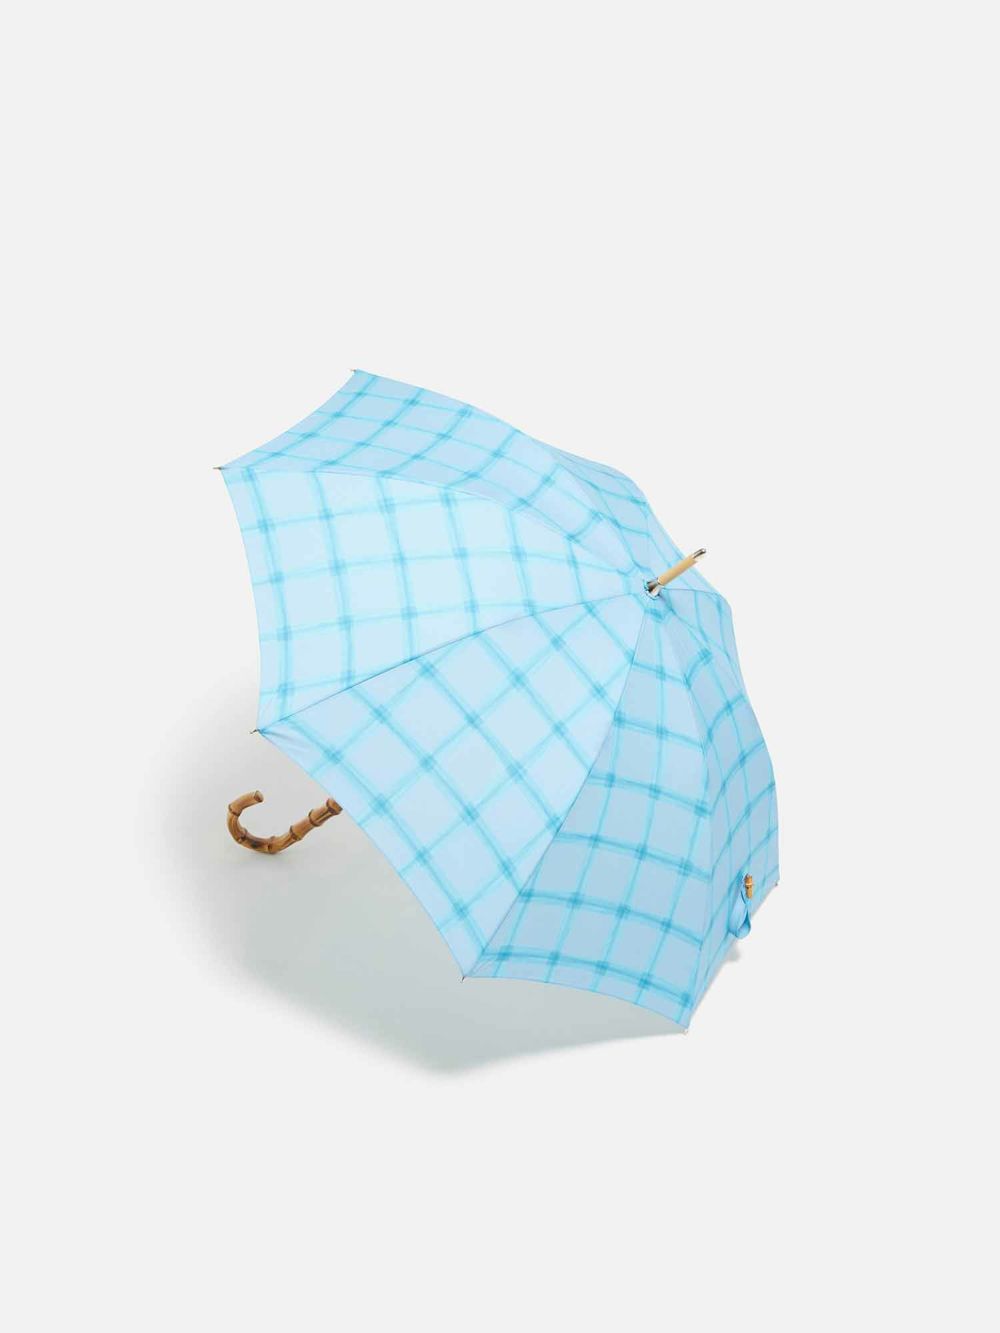 日傘 ライトブルー |傘・日傘 | WAKOオンラインストア | 銀座・和光